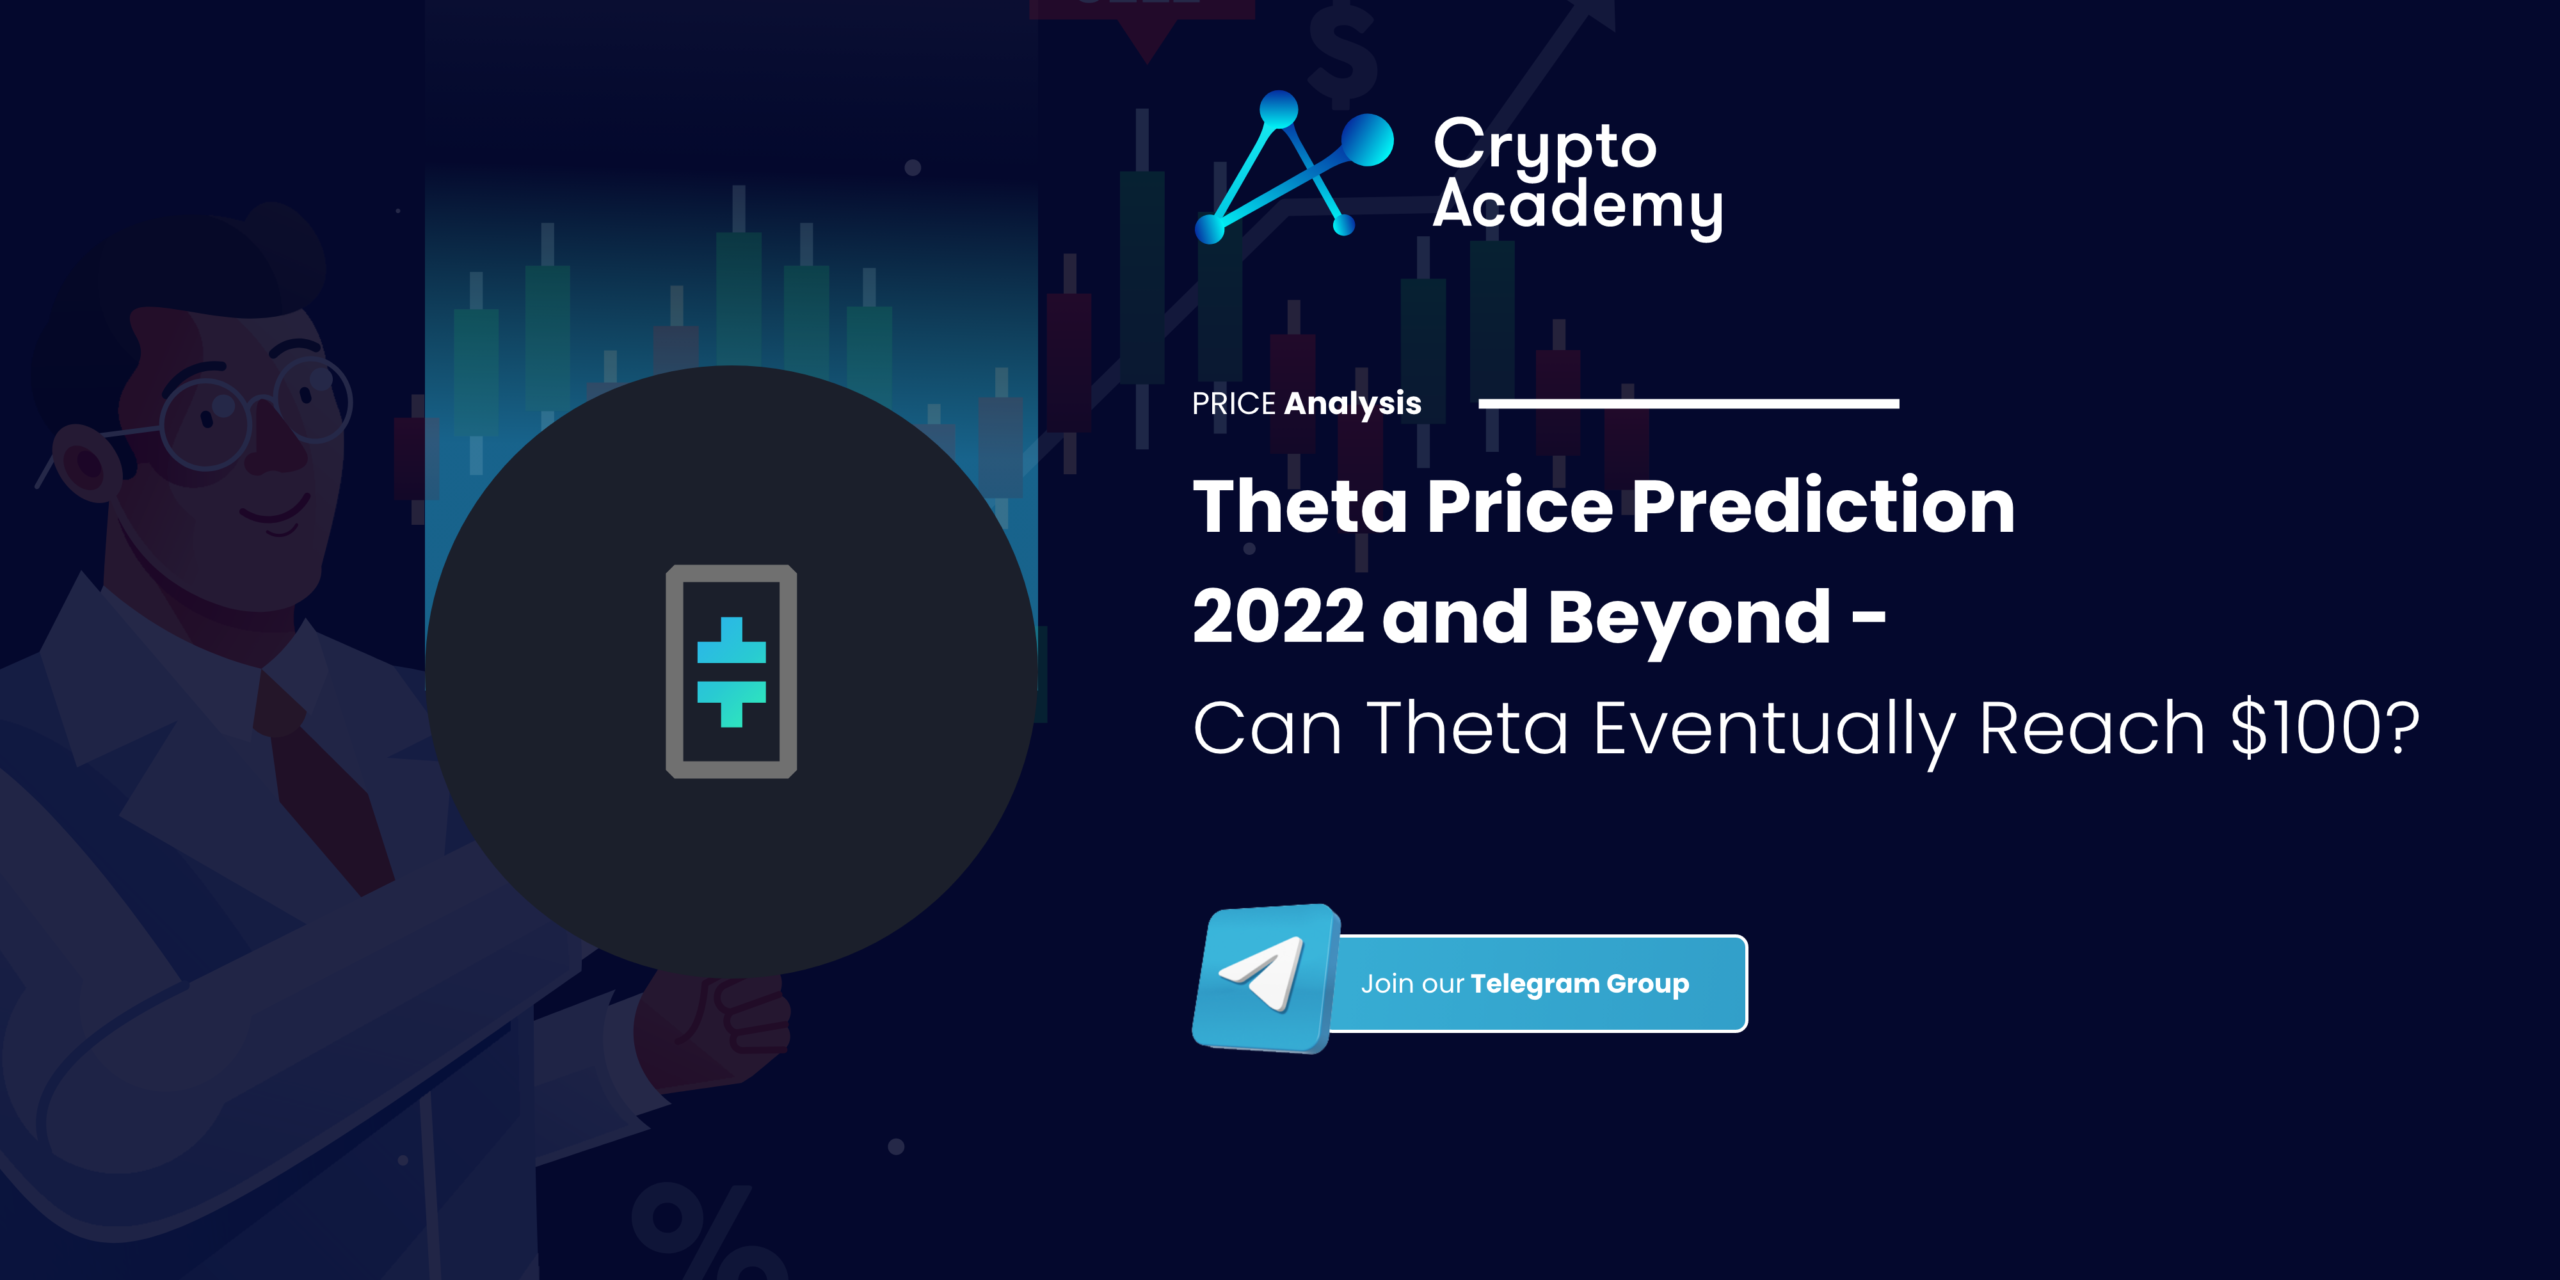 Theta Price Prediction 2022 and Beyond - Can Theta Eventually Reach $100?